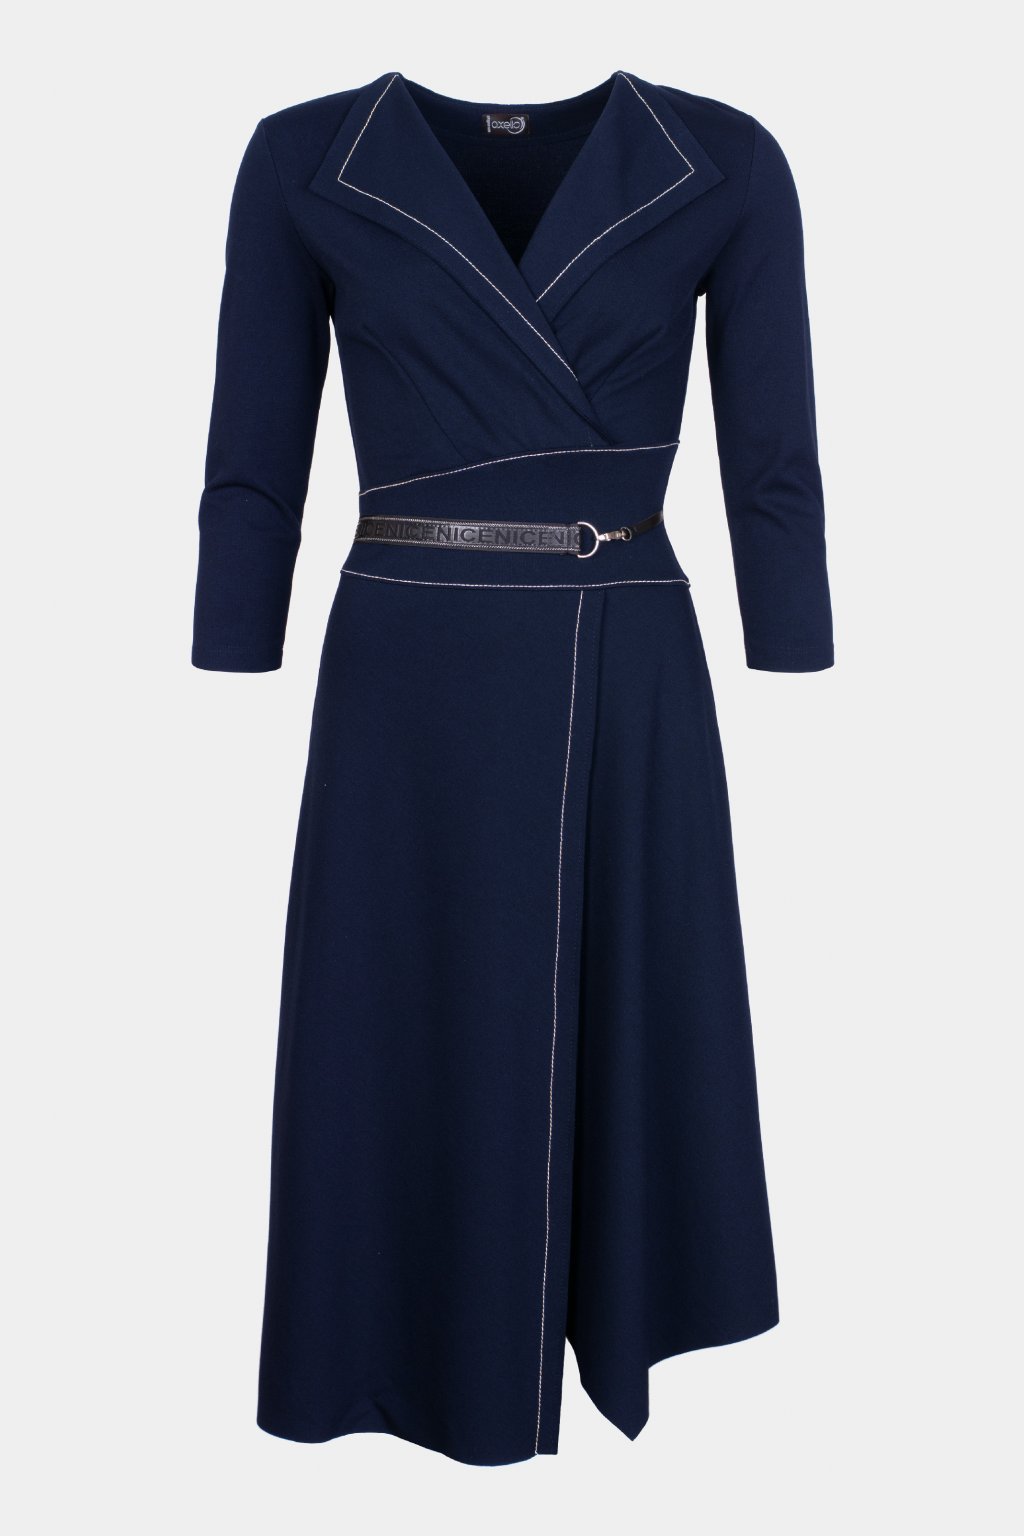 Podzimní šaty AXELLO tmavě modré 33020